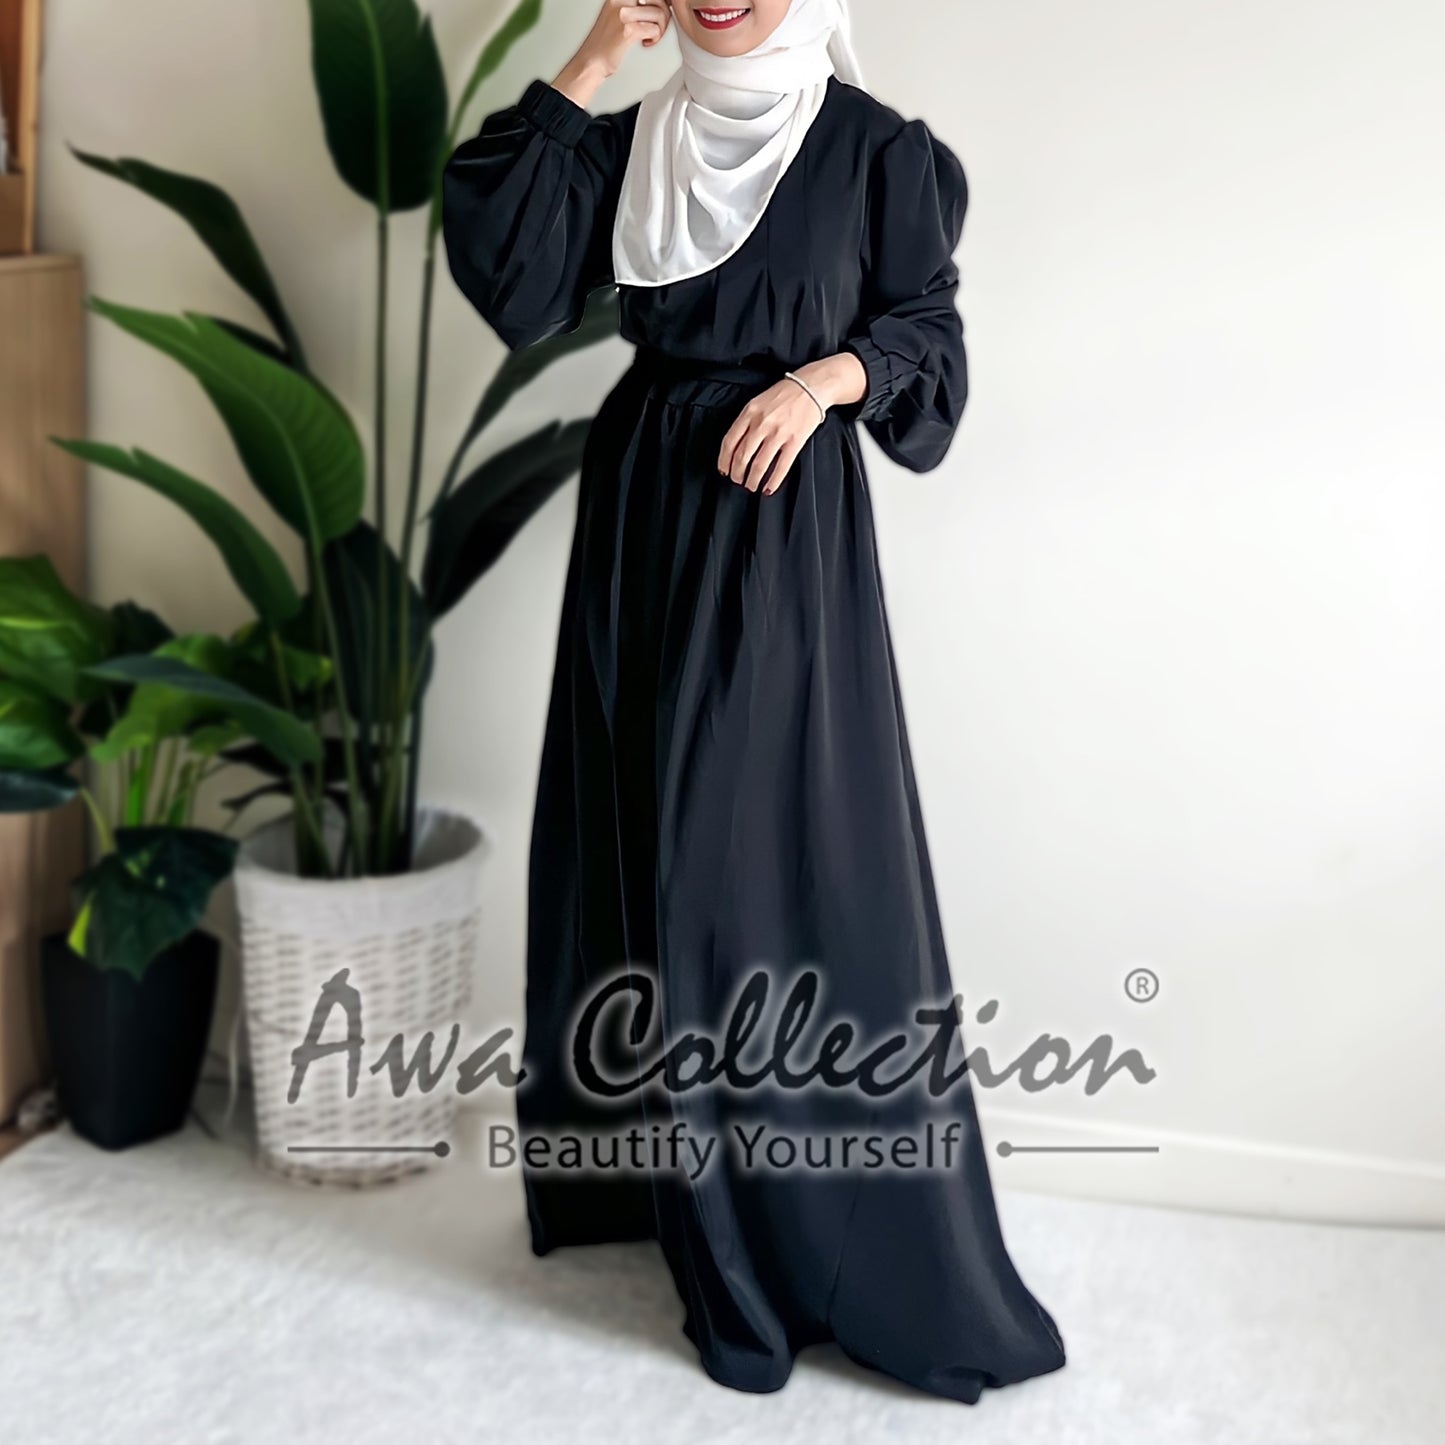 LALEESA Awa Collection DA111101 DRESS ZAHEERA Casual Elegant High Neck Puff Sleeve Dress Muslimah Dress Women Dress